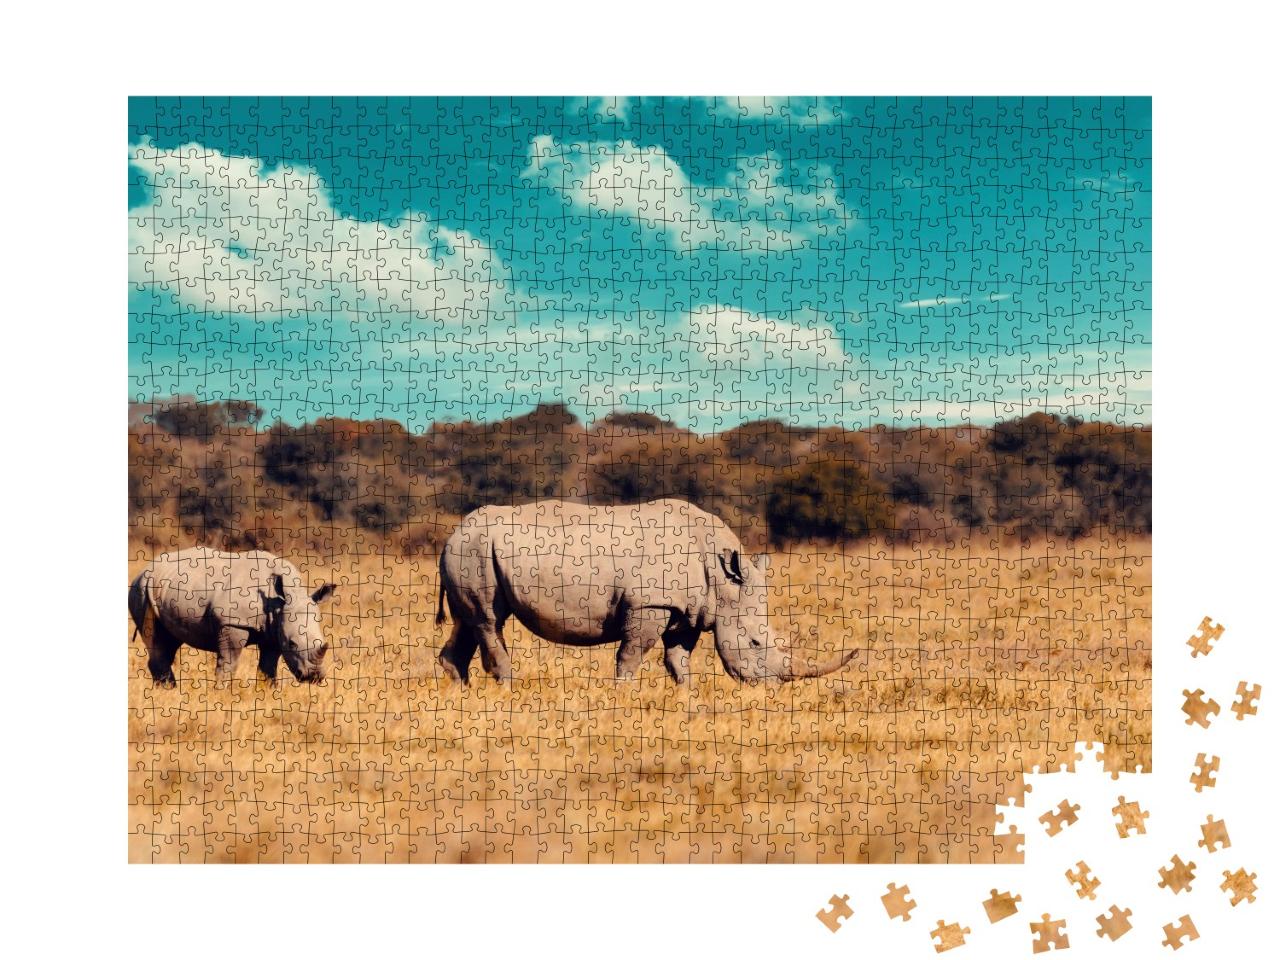 Puzzle de 1000 pièces « Famille de rhinocéros, mère et bébé rhinocéros blanc, Botswana »